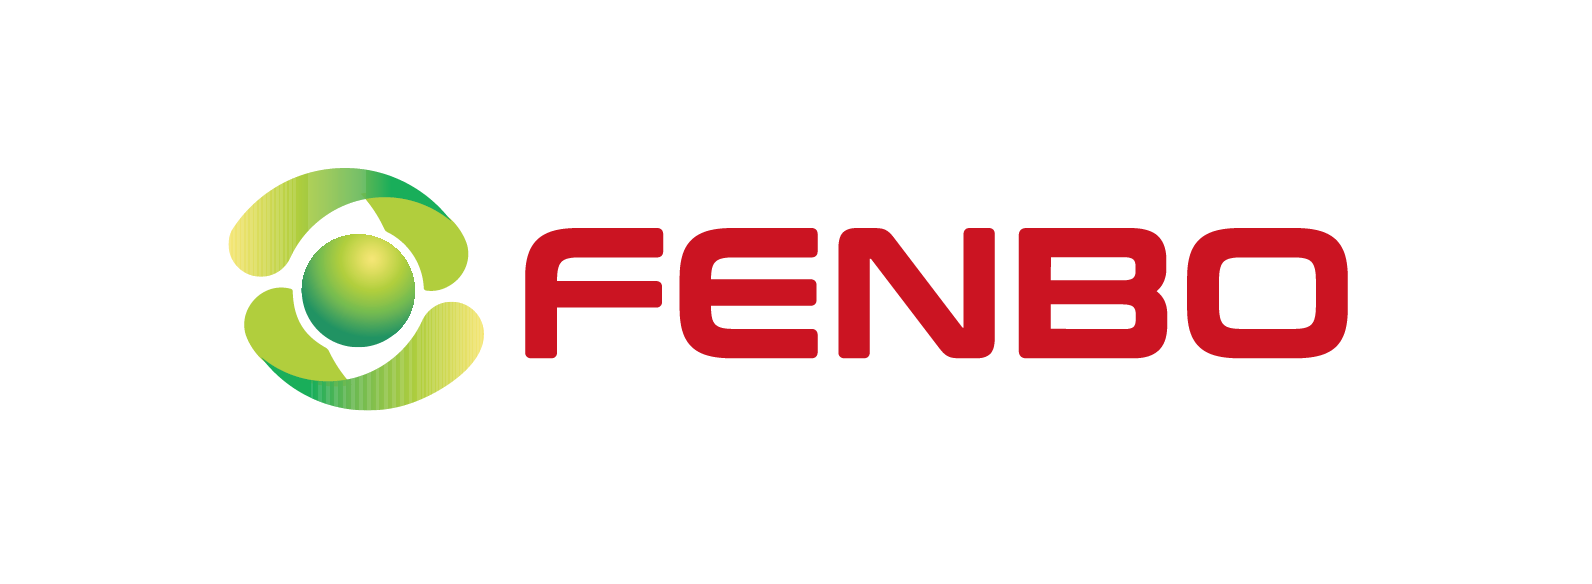 Fenbo_logo_PNG(1(11-27-17-33-03).png